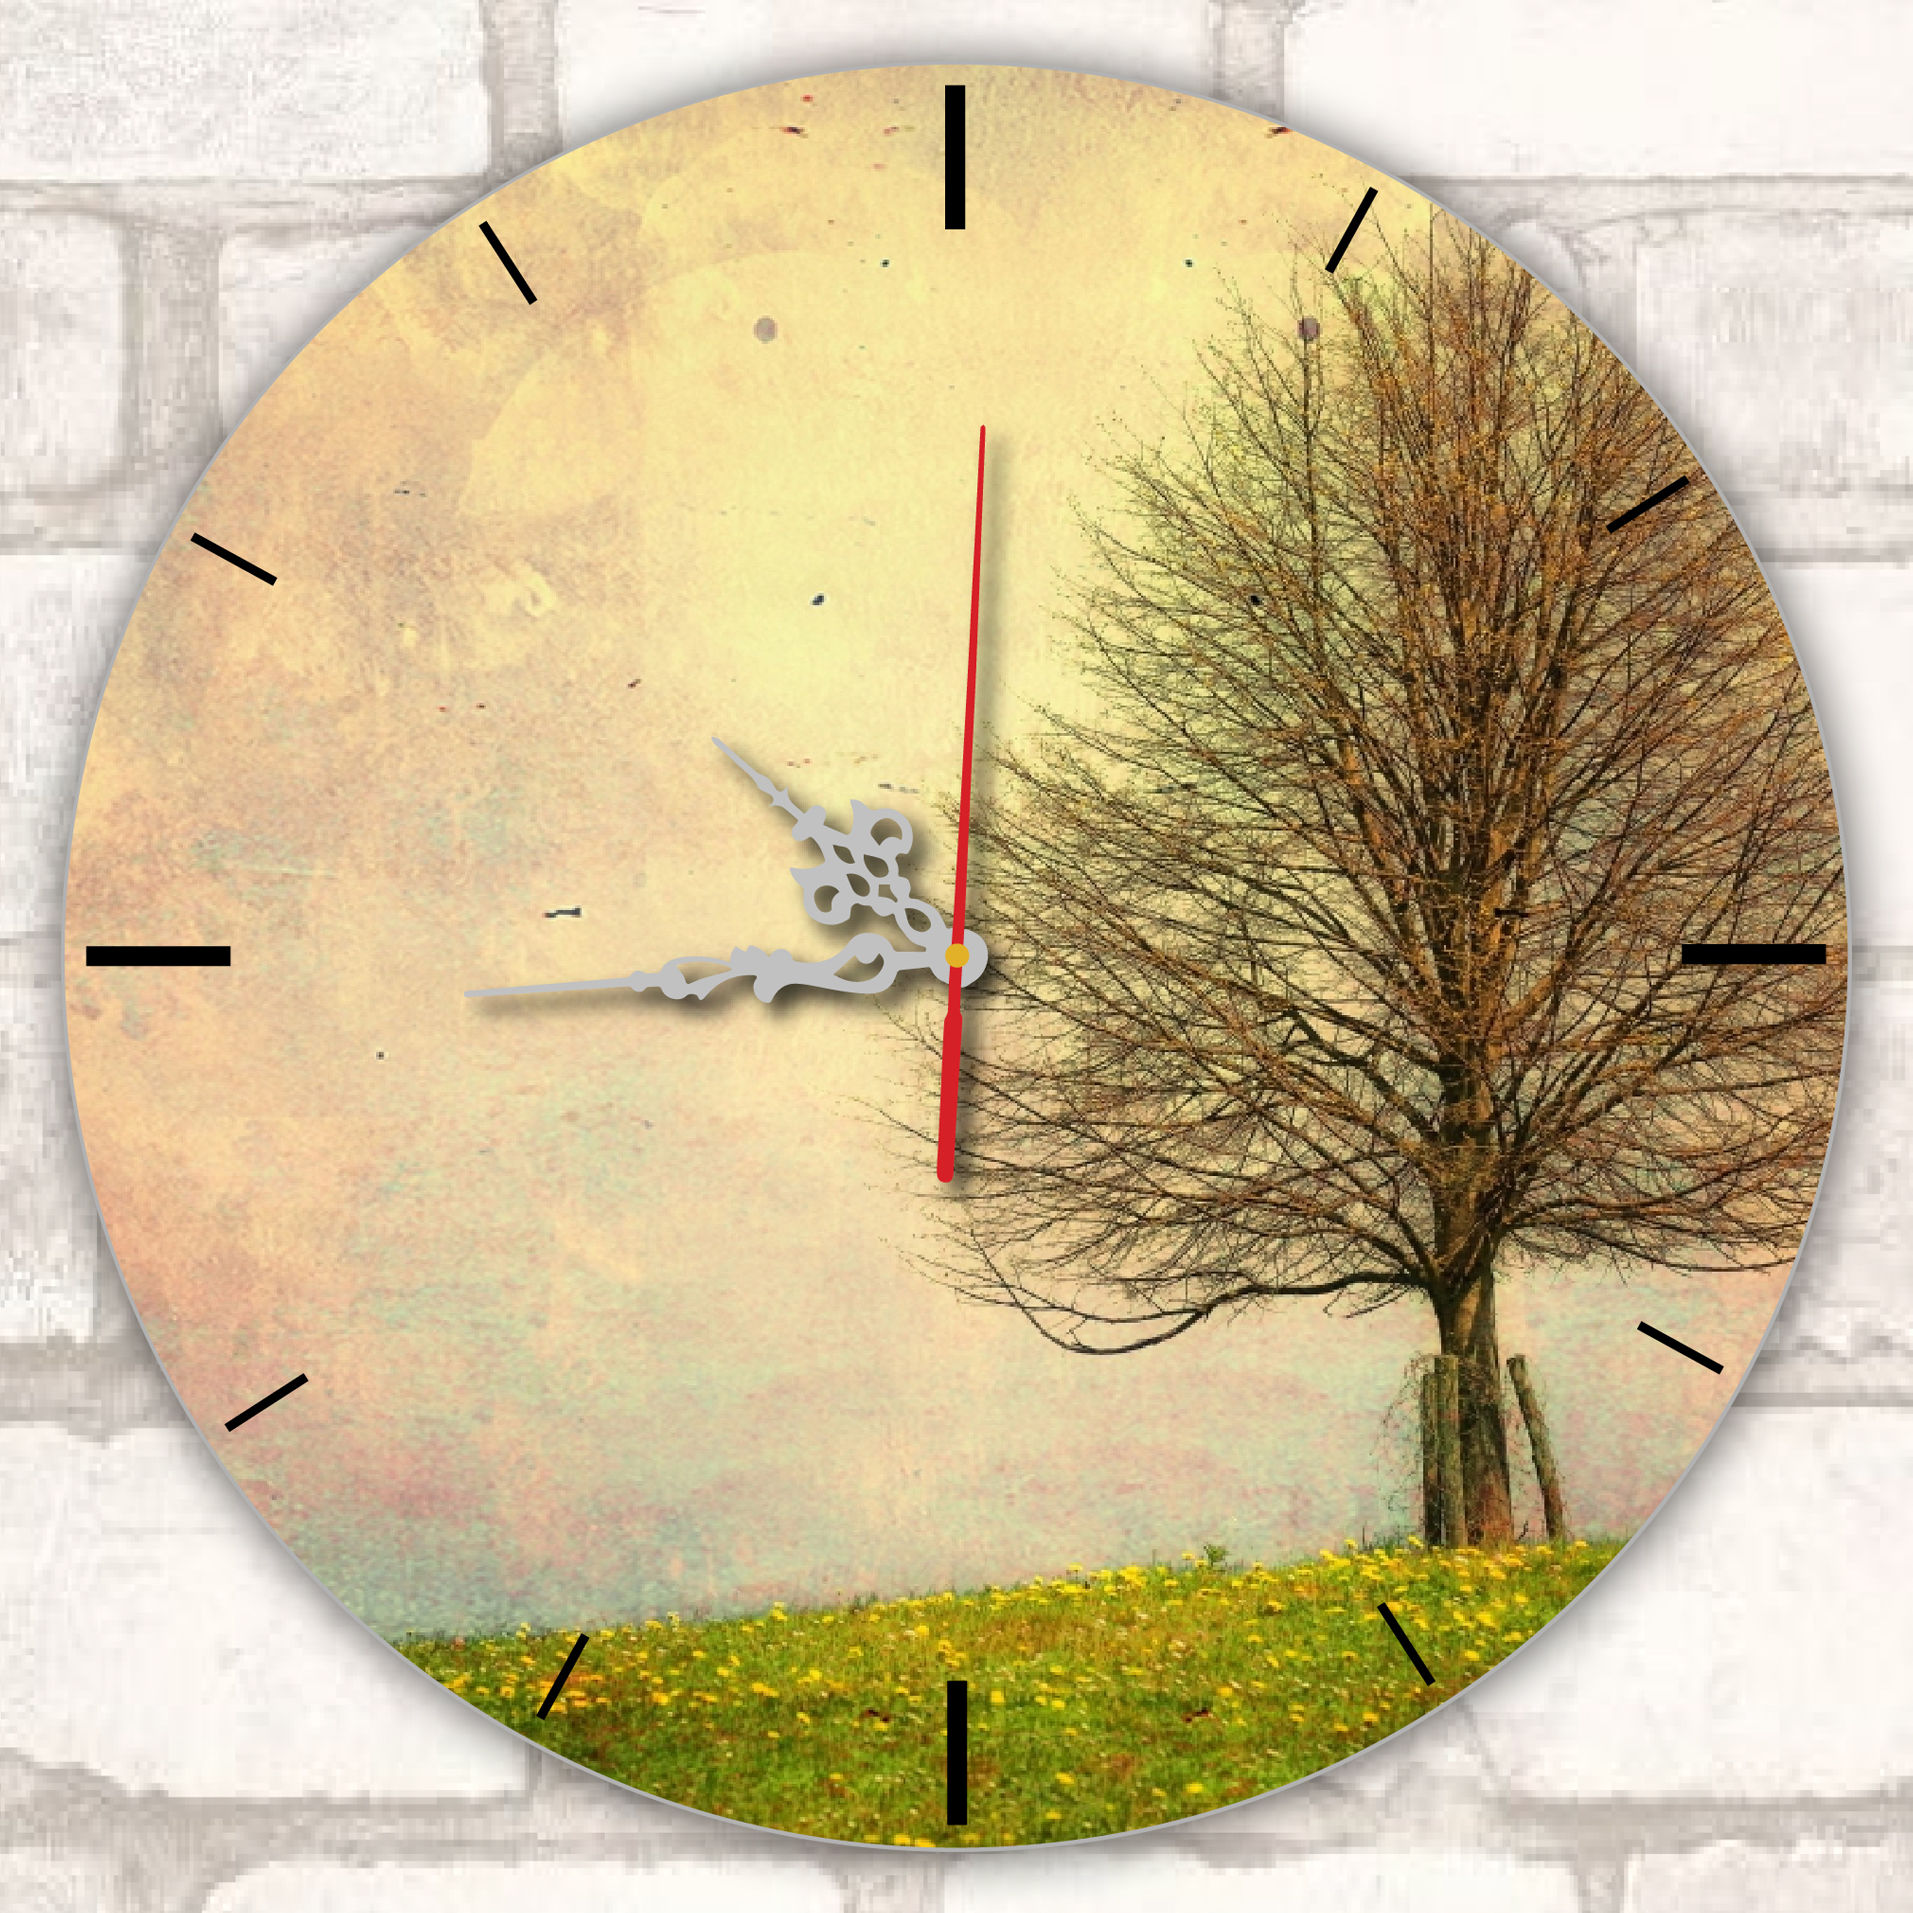 Impression sur horloge murale ronde avec aiguilles argentées (32 cm)